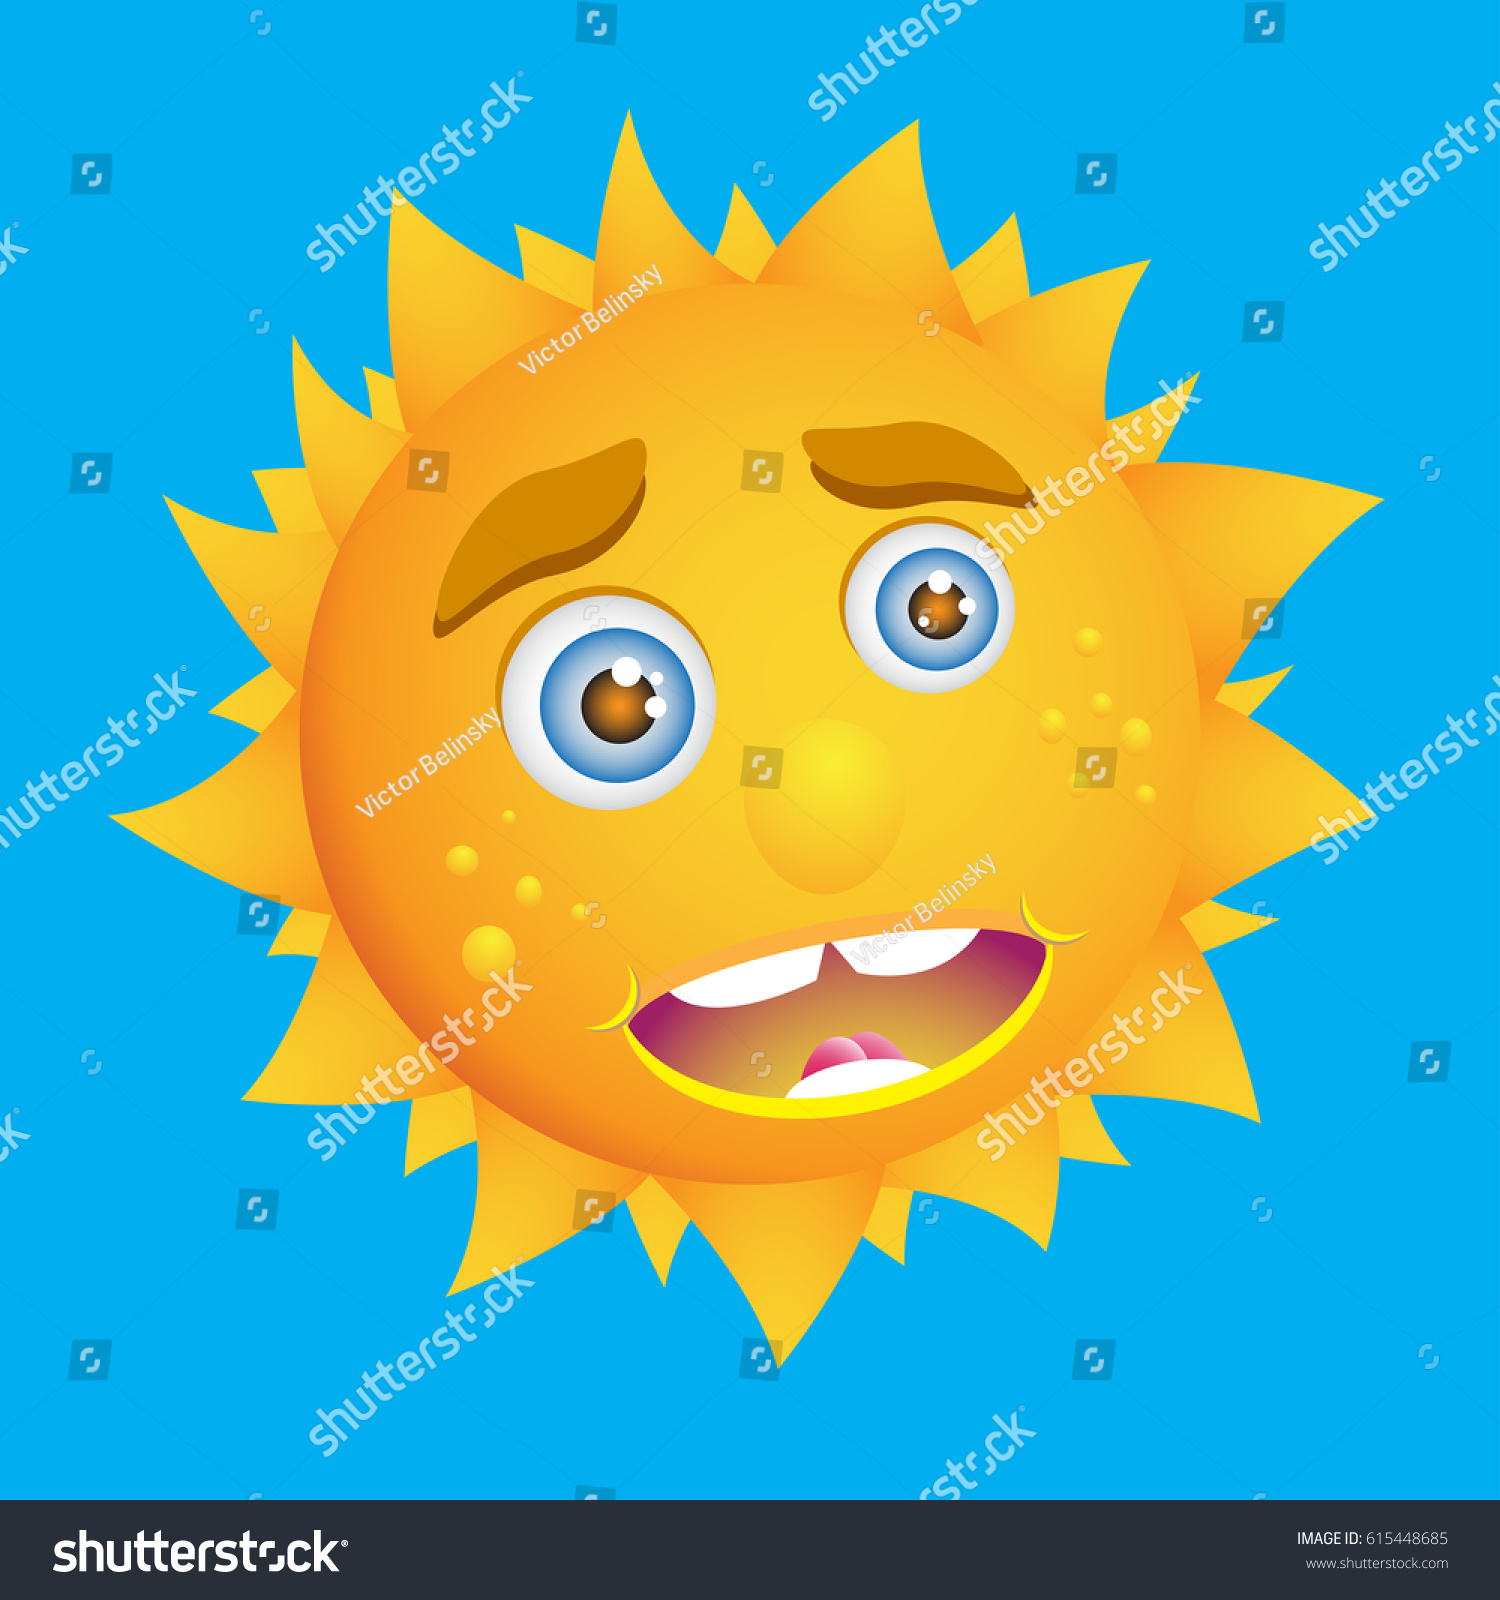 Cute Cartoon Sun Kind Sunny Smile Stock Vector Royalty Free 615448685